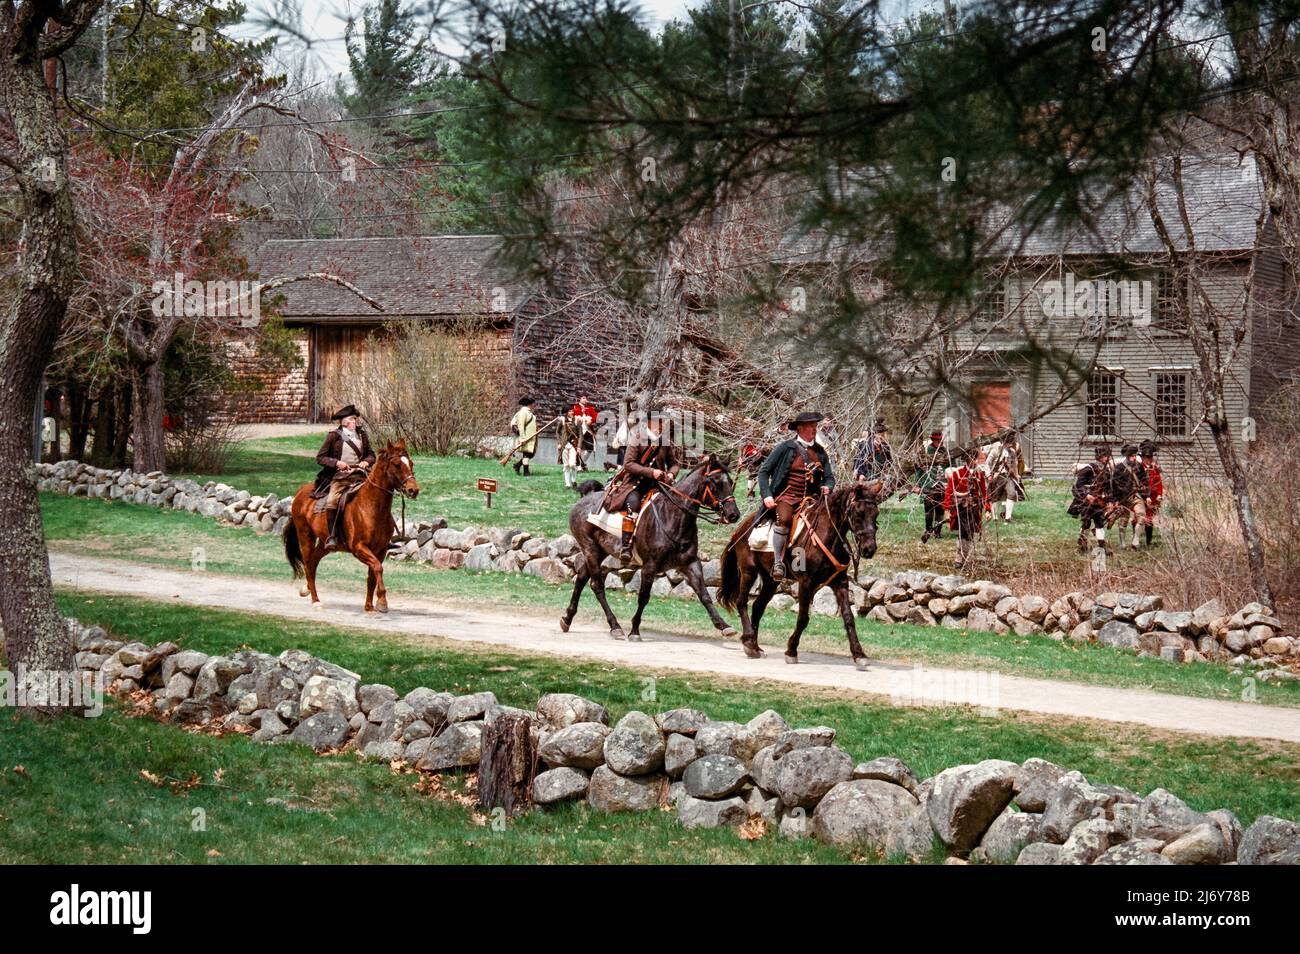 Les personnages de la reconstitution de Minuteman longent des chevaux sur Battle Road, devant des troupes à Lexington, Massachusetts, pendant le week-end du jour des Patriots. Capturé o Banque D'Images